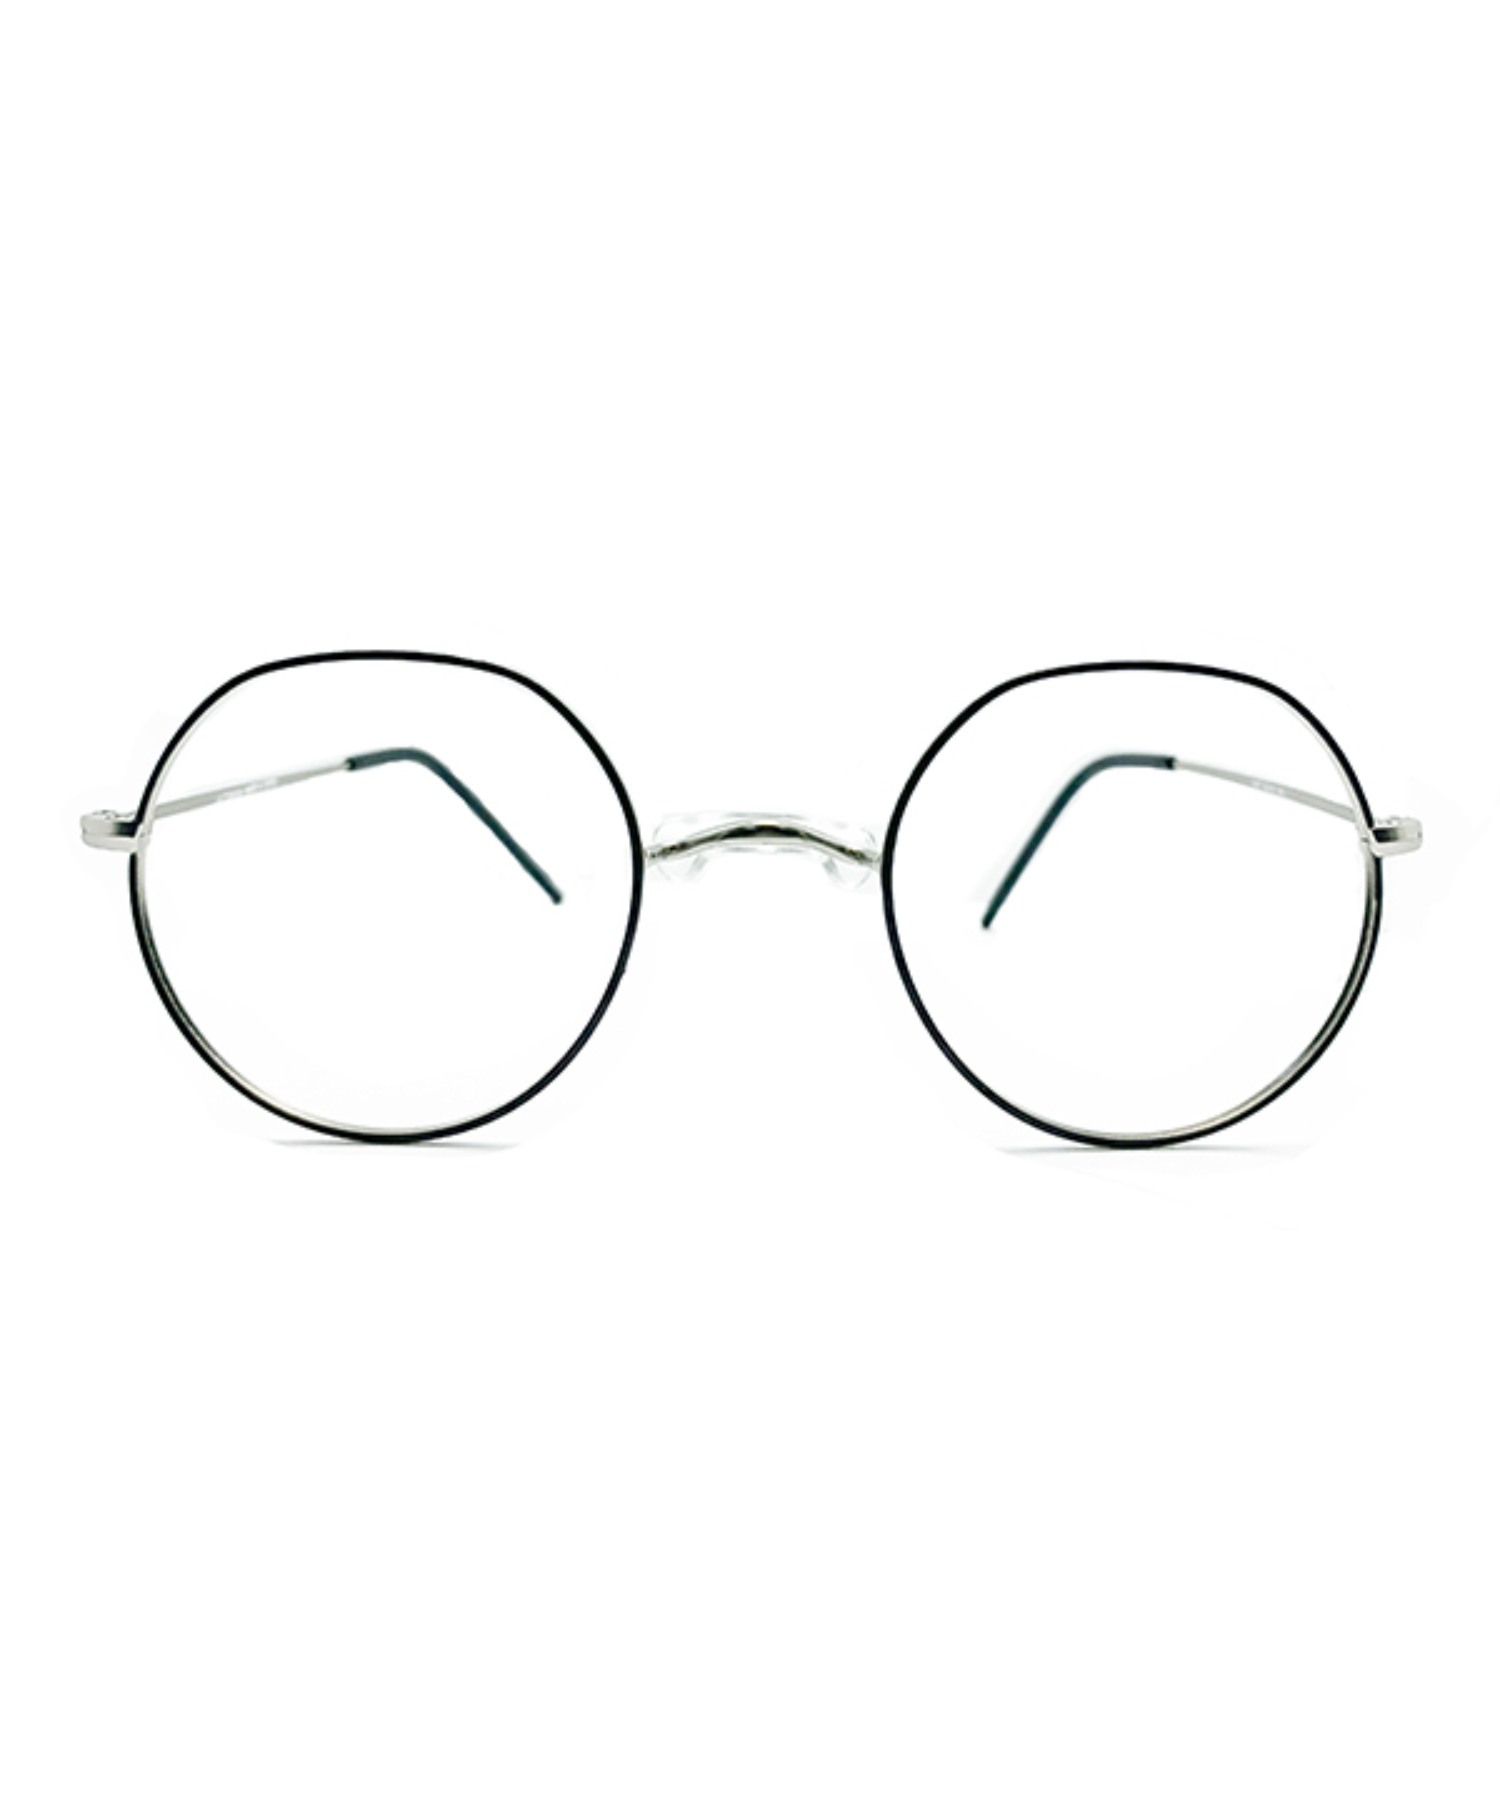 VLING 1507, Korean glasses, sunglasses, eyeglasses, glasses